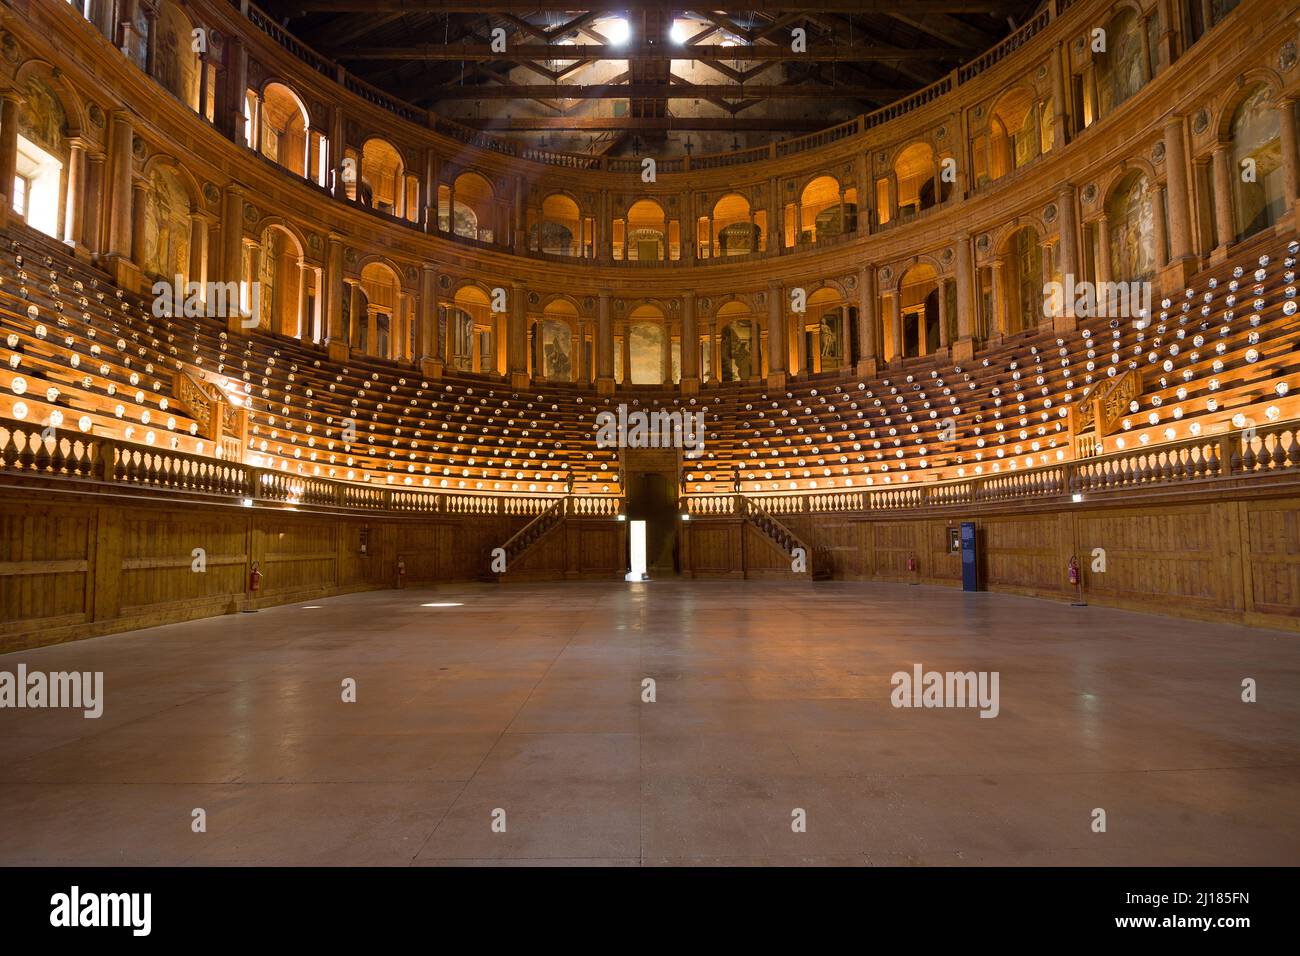 Teatro Farnese in the Palazzo della Pilotta, Parma, Italy. Stock Photo